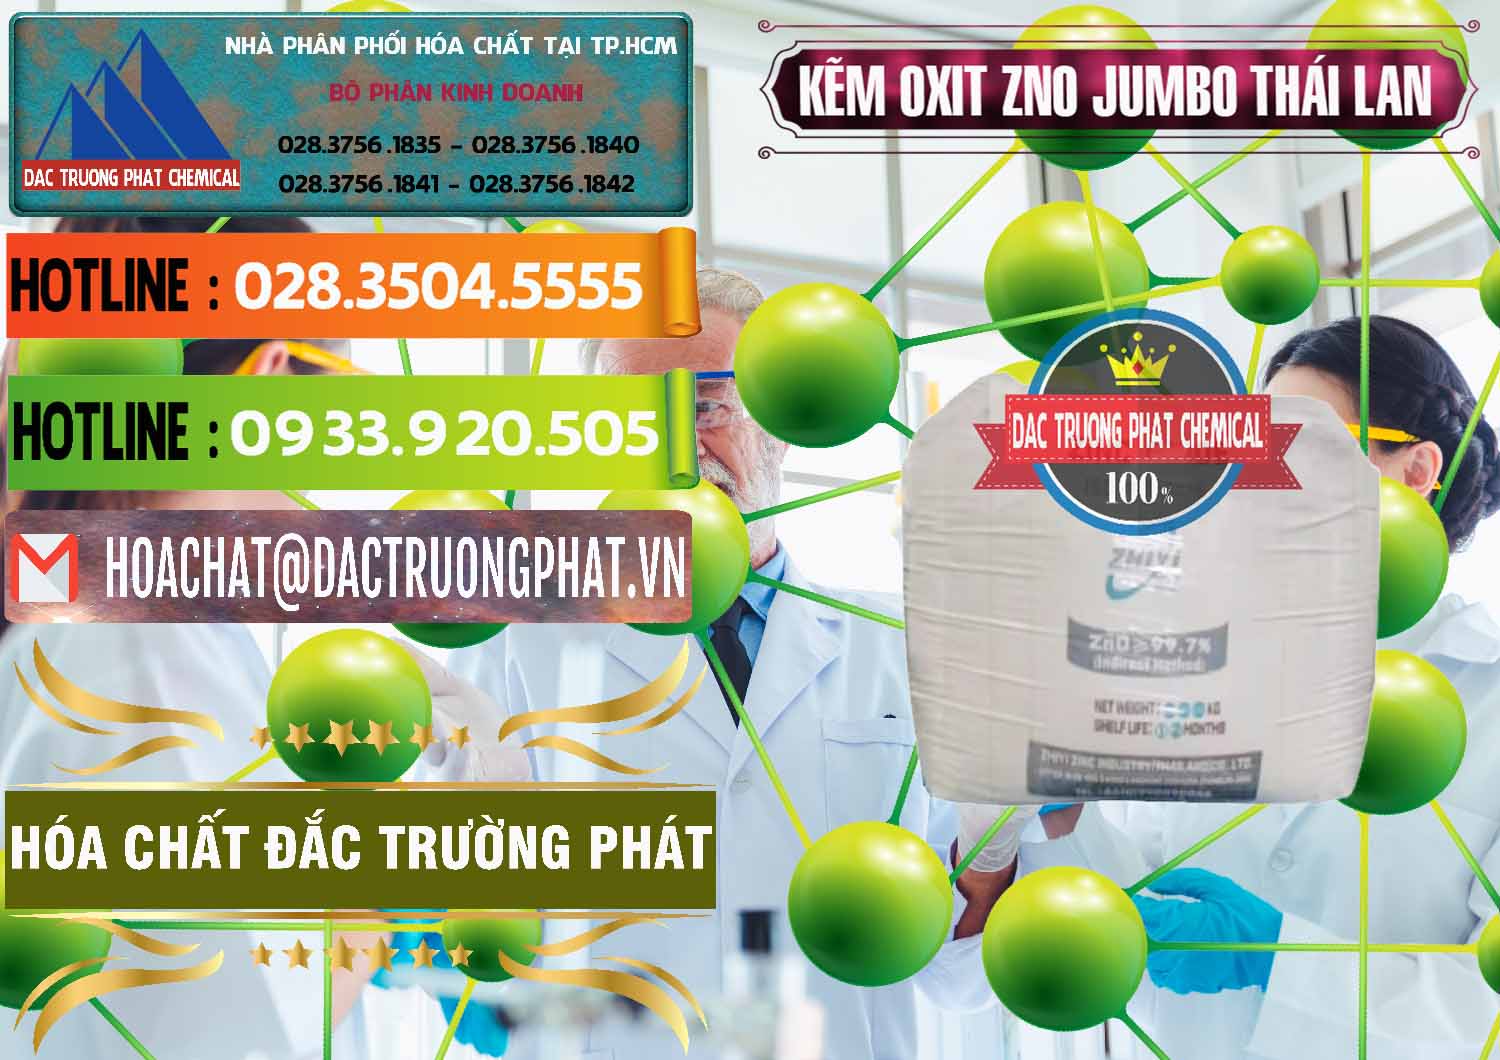 Cty cung ứng - bán Zinc Oxide - Bột Kẽm Oxit ZNO Jumbo Bành Thái Lan Thailand - 0370 - Đơn vị phân phối và bán hóa chất tại TP.HCM - cungcaphoachat.com.vn